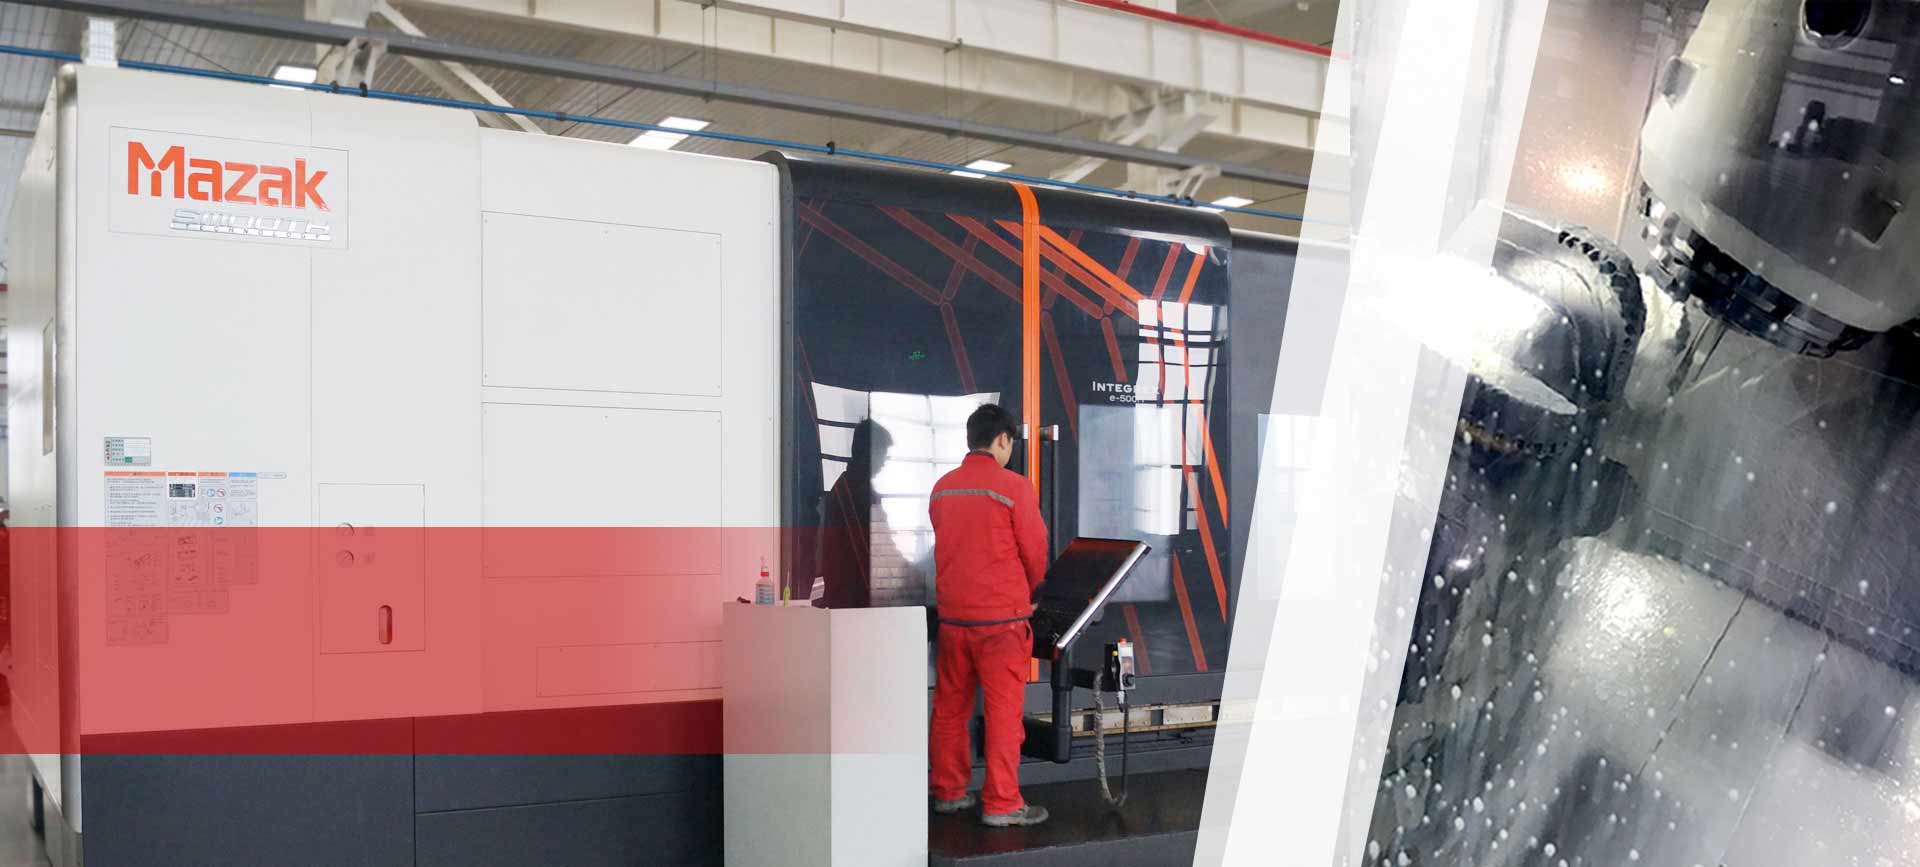 Fortschrittliche CNC-Maschinen, um Qualität garantiert zu halten.